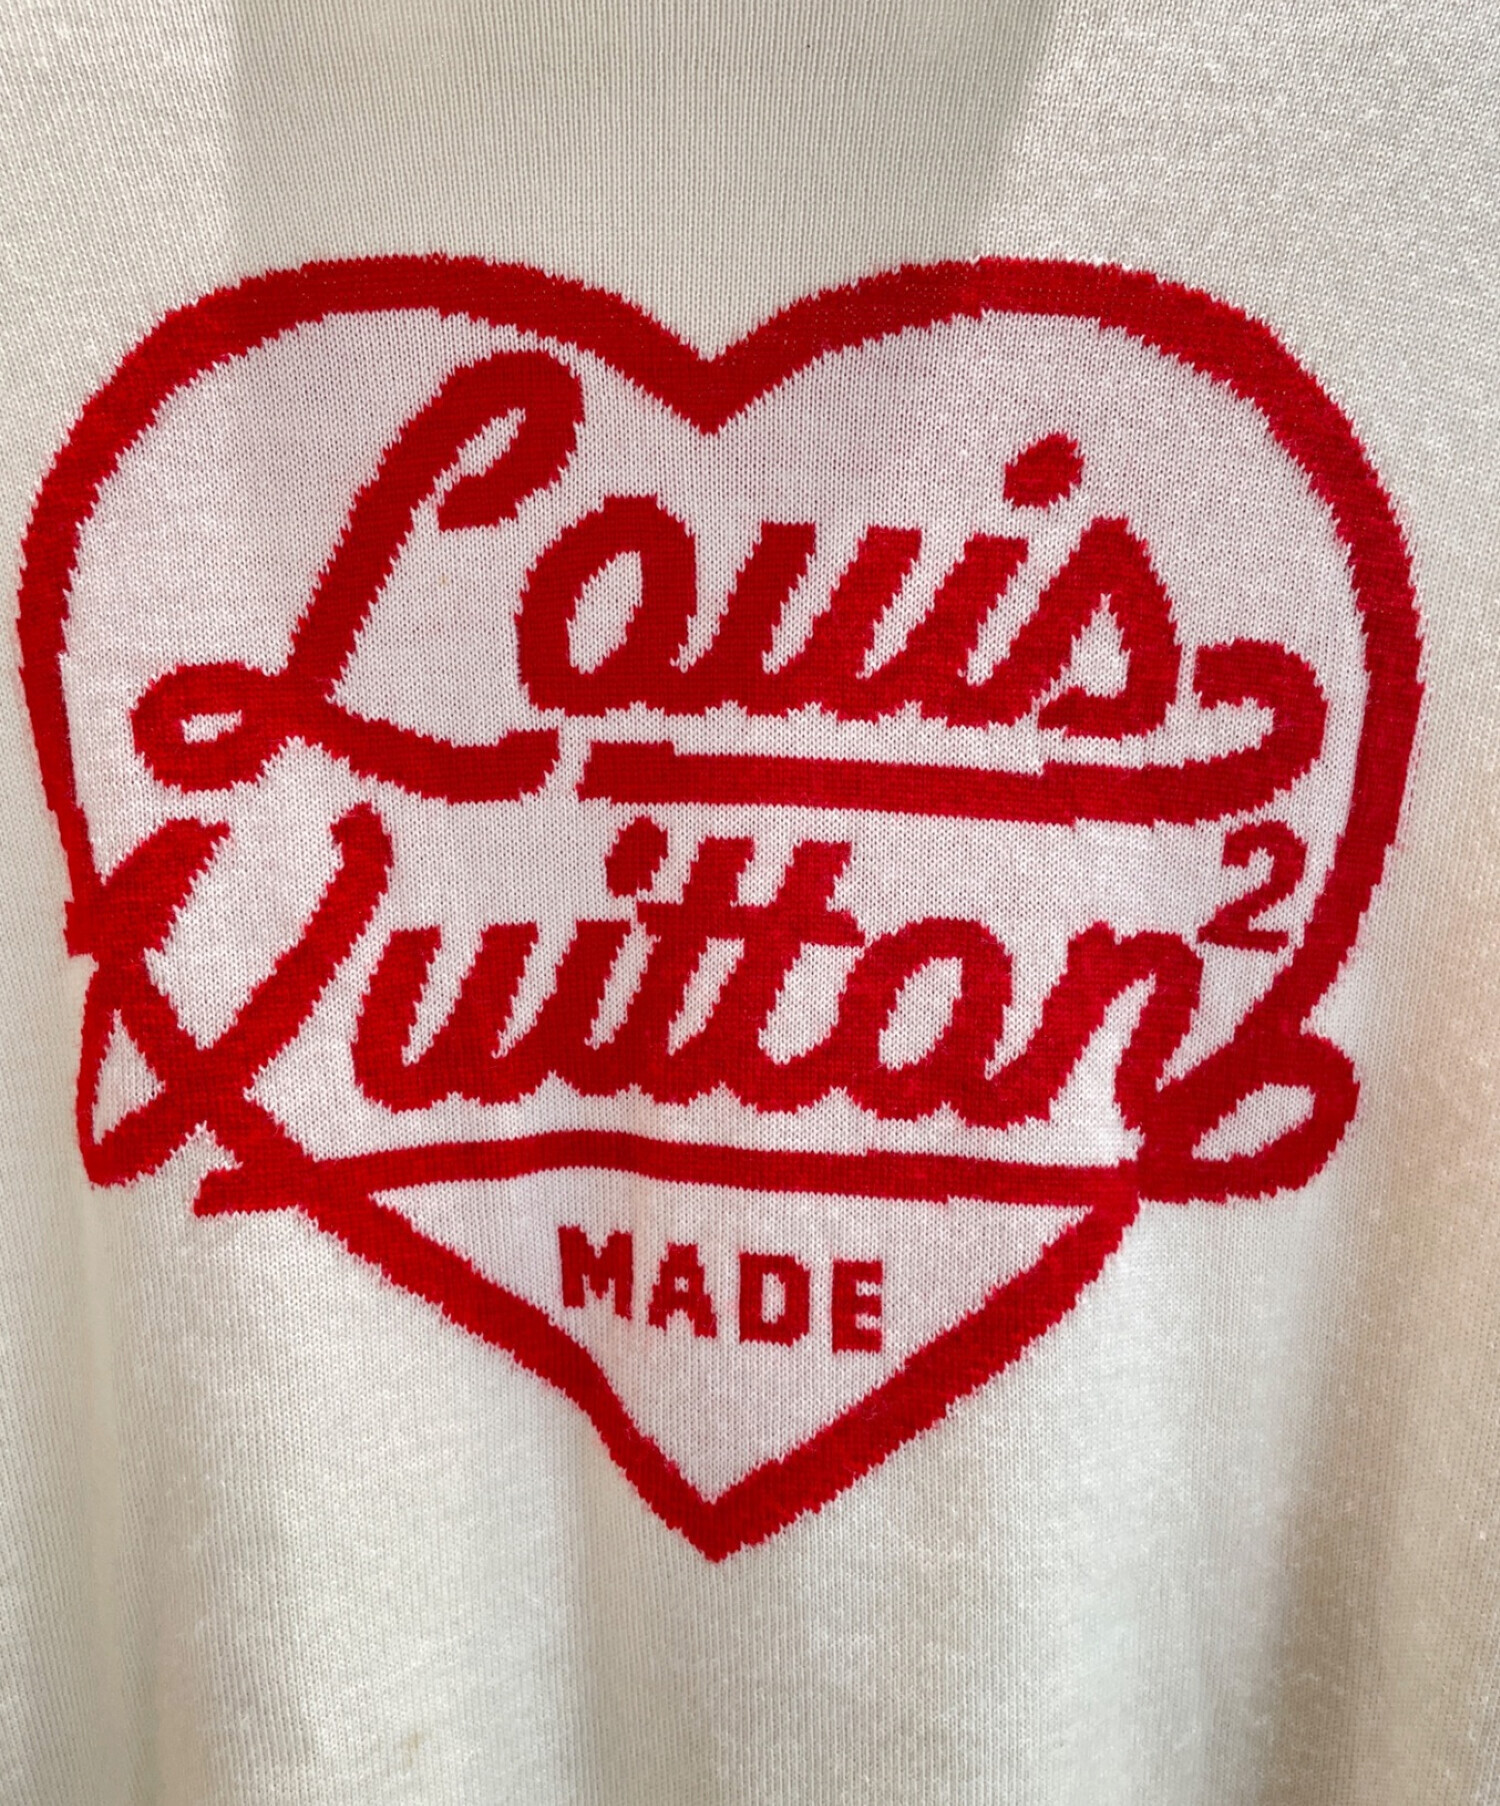 LOUIS VUITTON×NIGO (ルイ ヴィトン×ニゴー) コラボインタルシアハート タートルネックニットセーター アイボリー×レッド サイズ:M